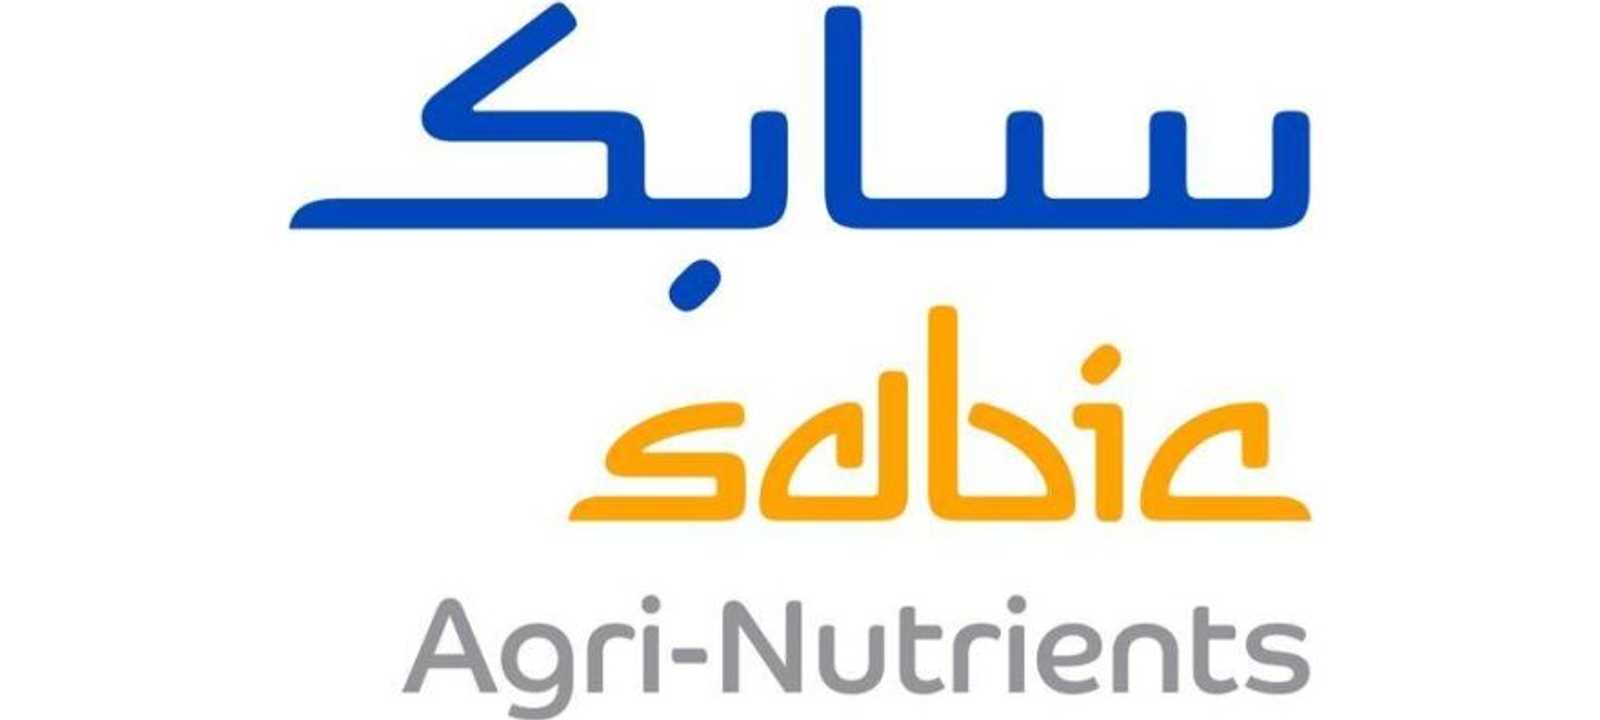 شعار شركة سابك للمغذيات الزراعية